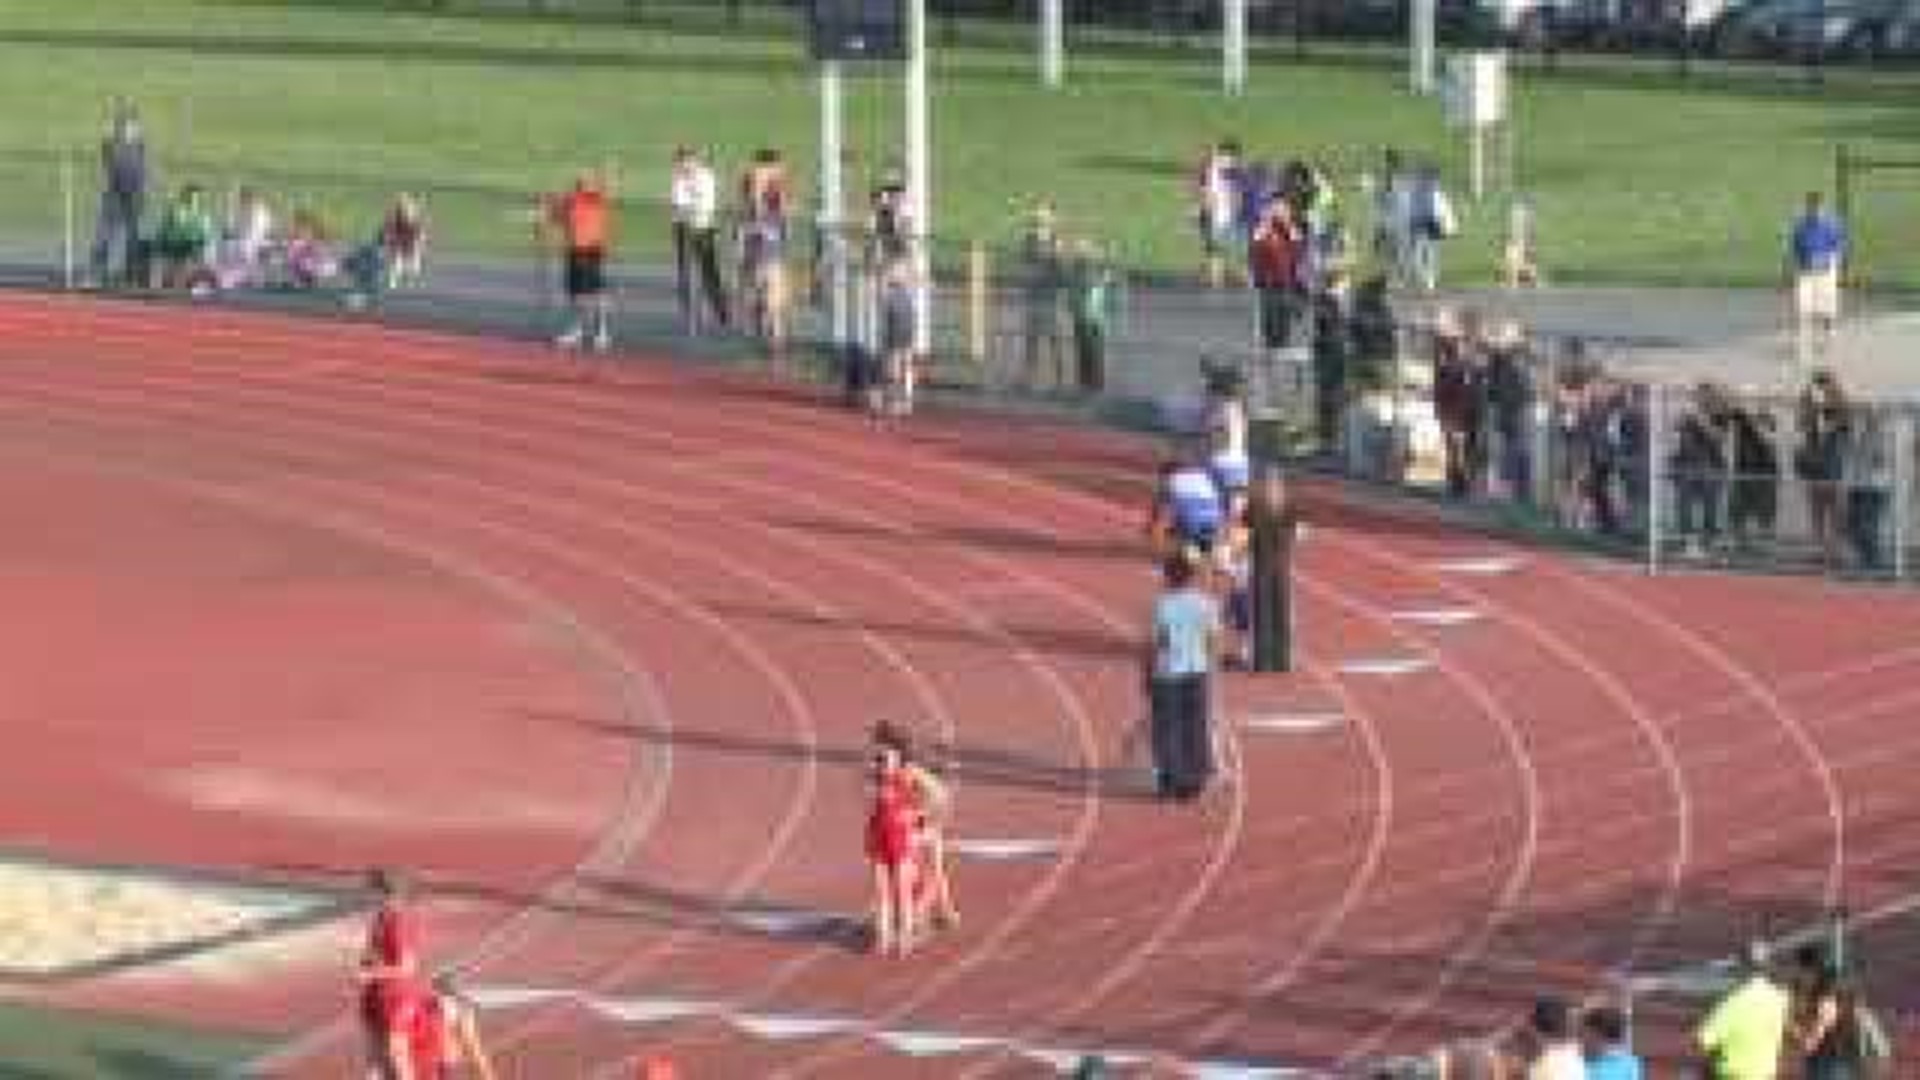 District II AA Girls 4 x 100 meter relay